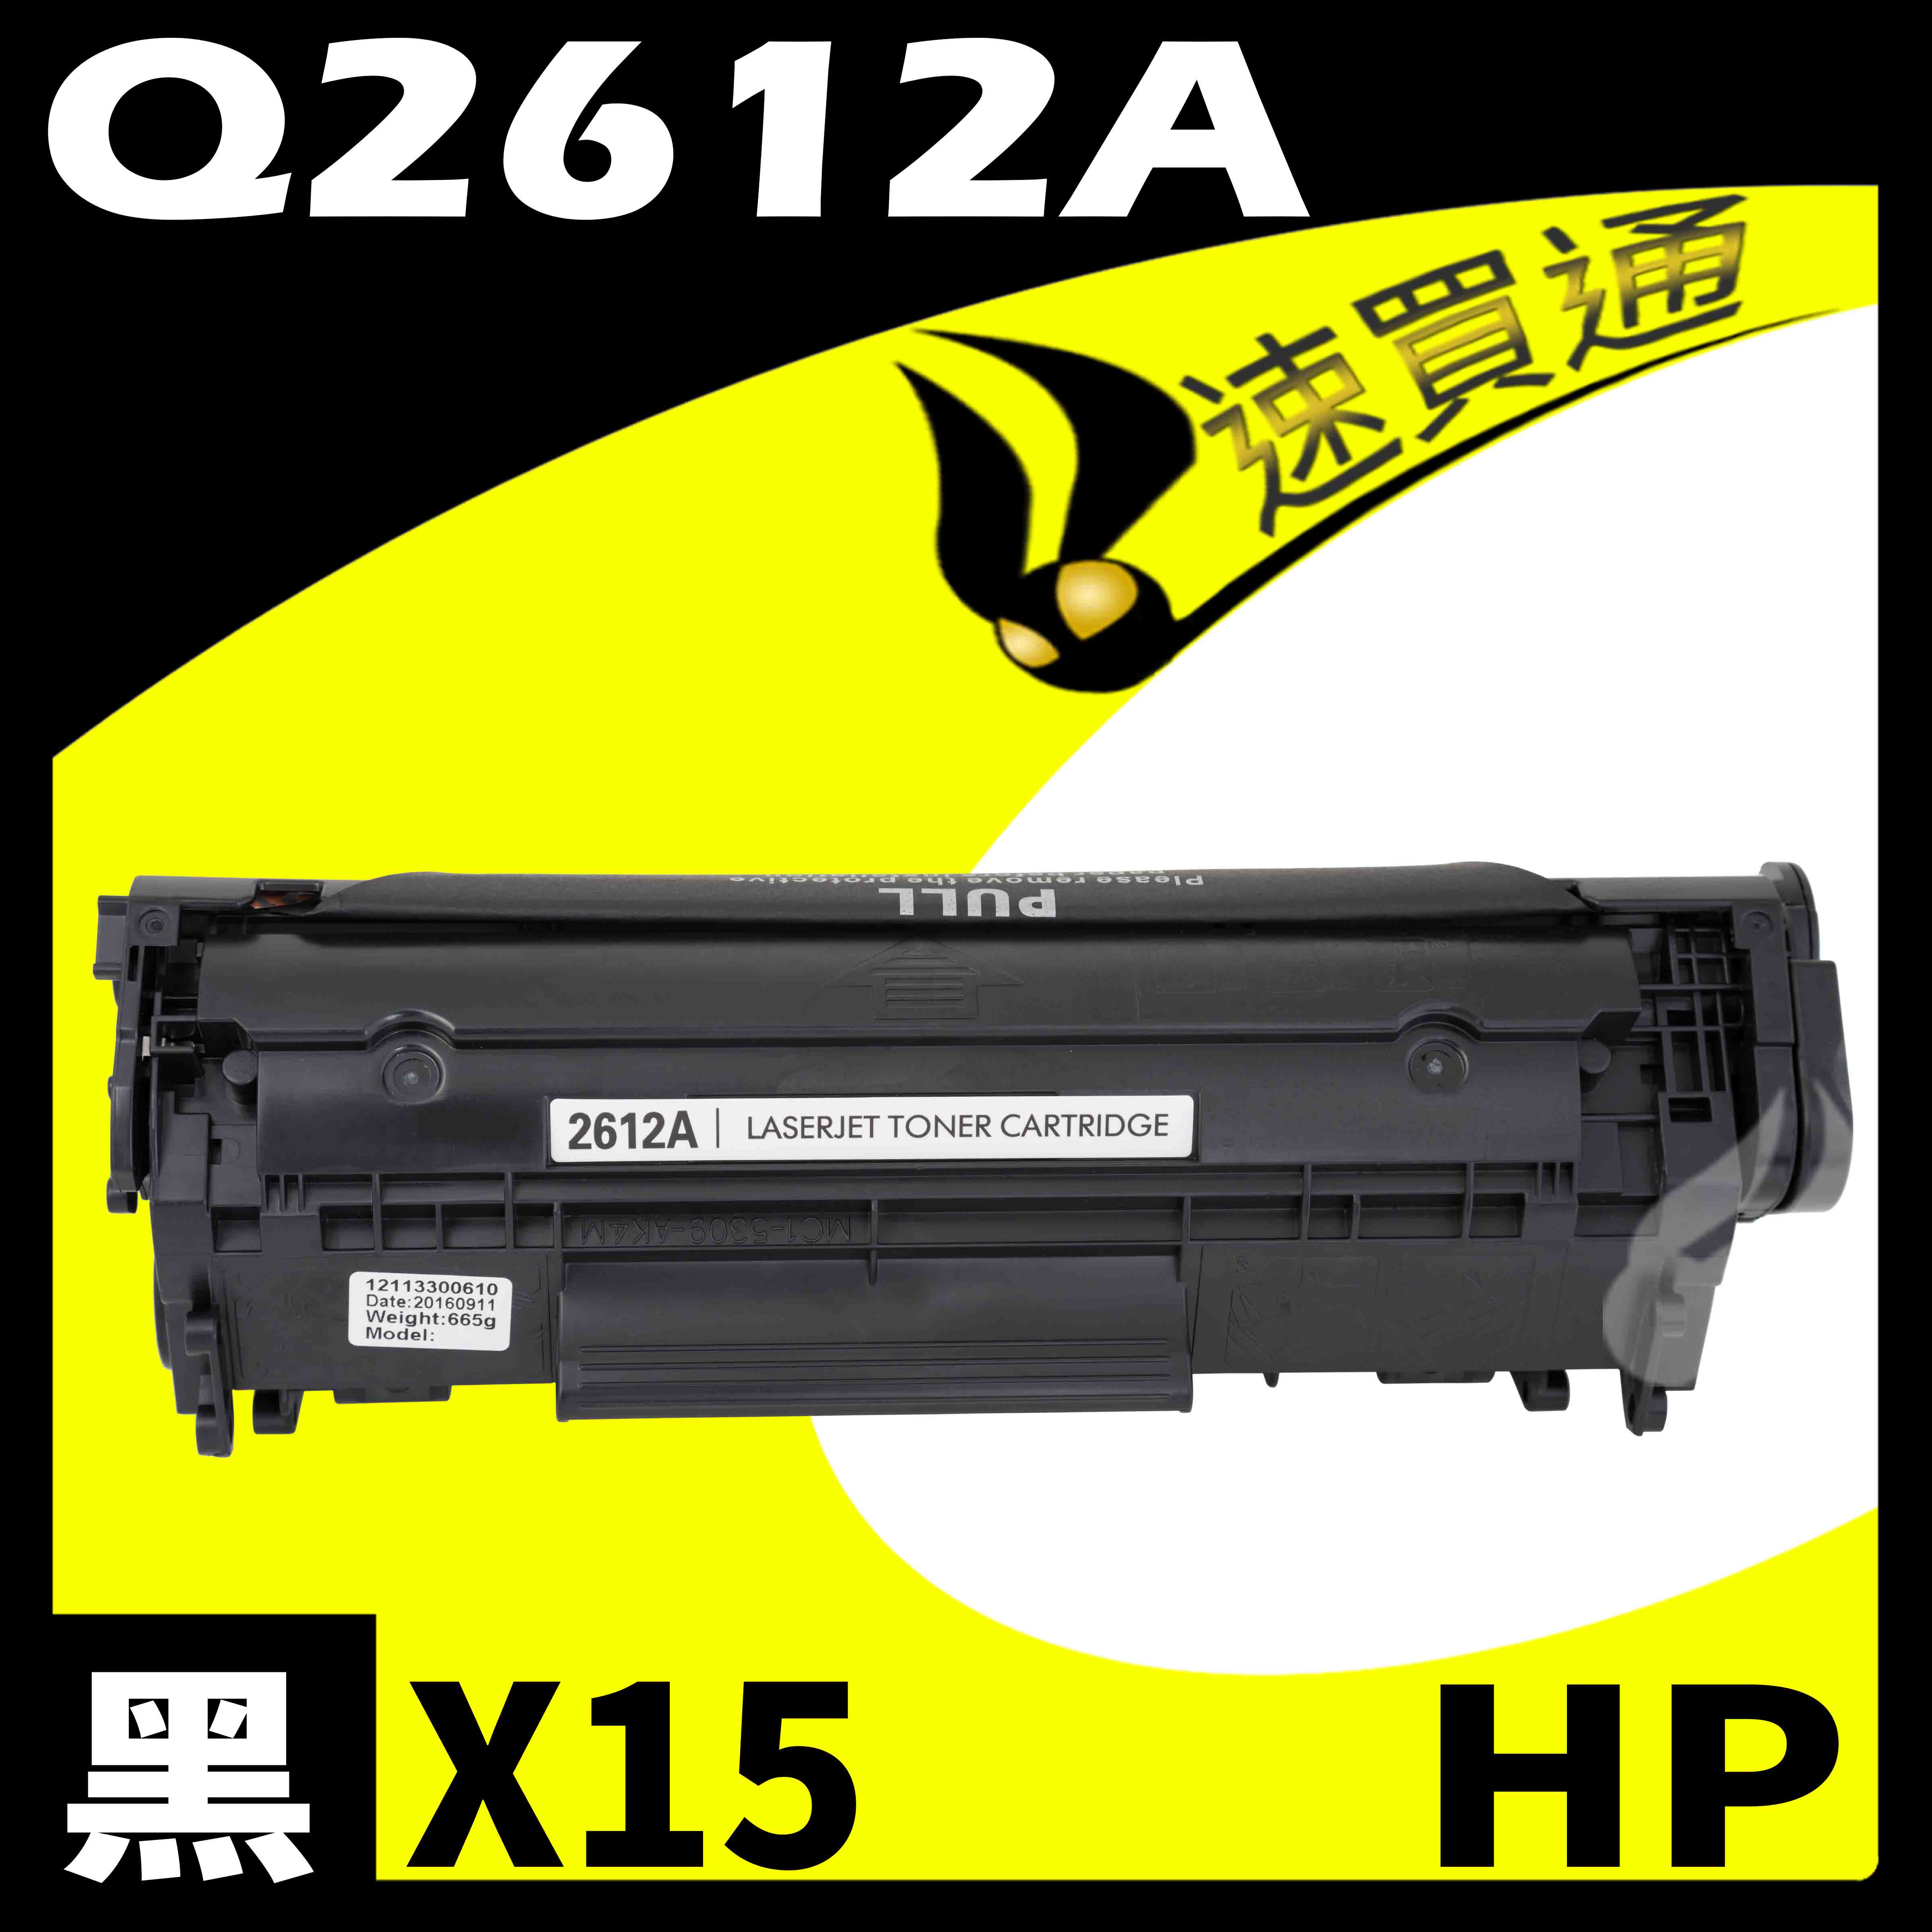 【速買通】超值15件組 HP Q2612A 相容碳粉匣